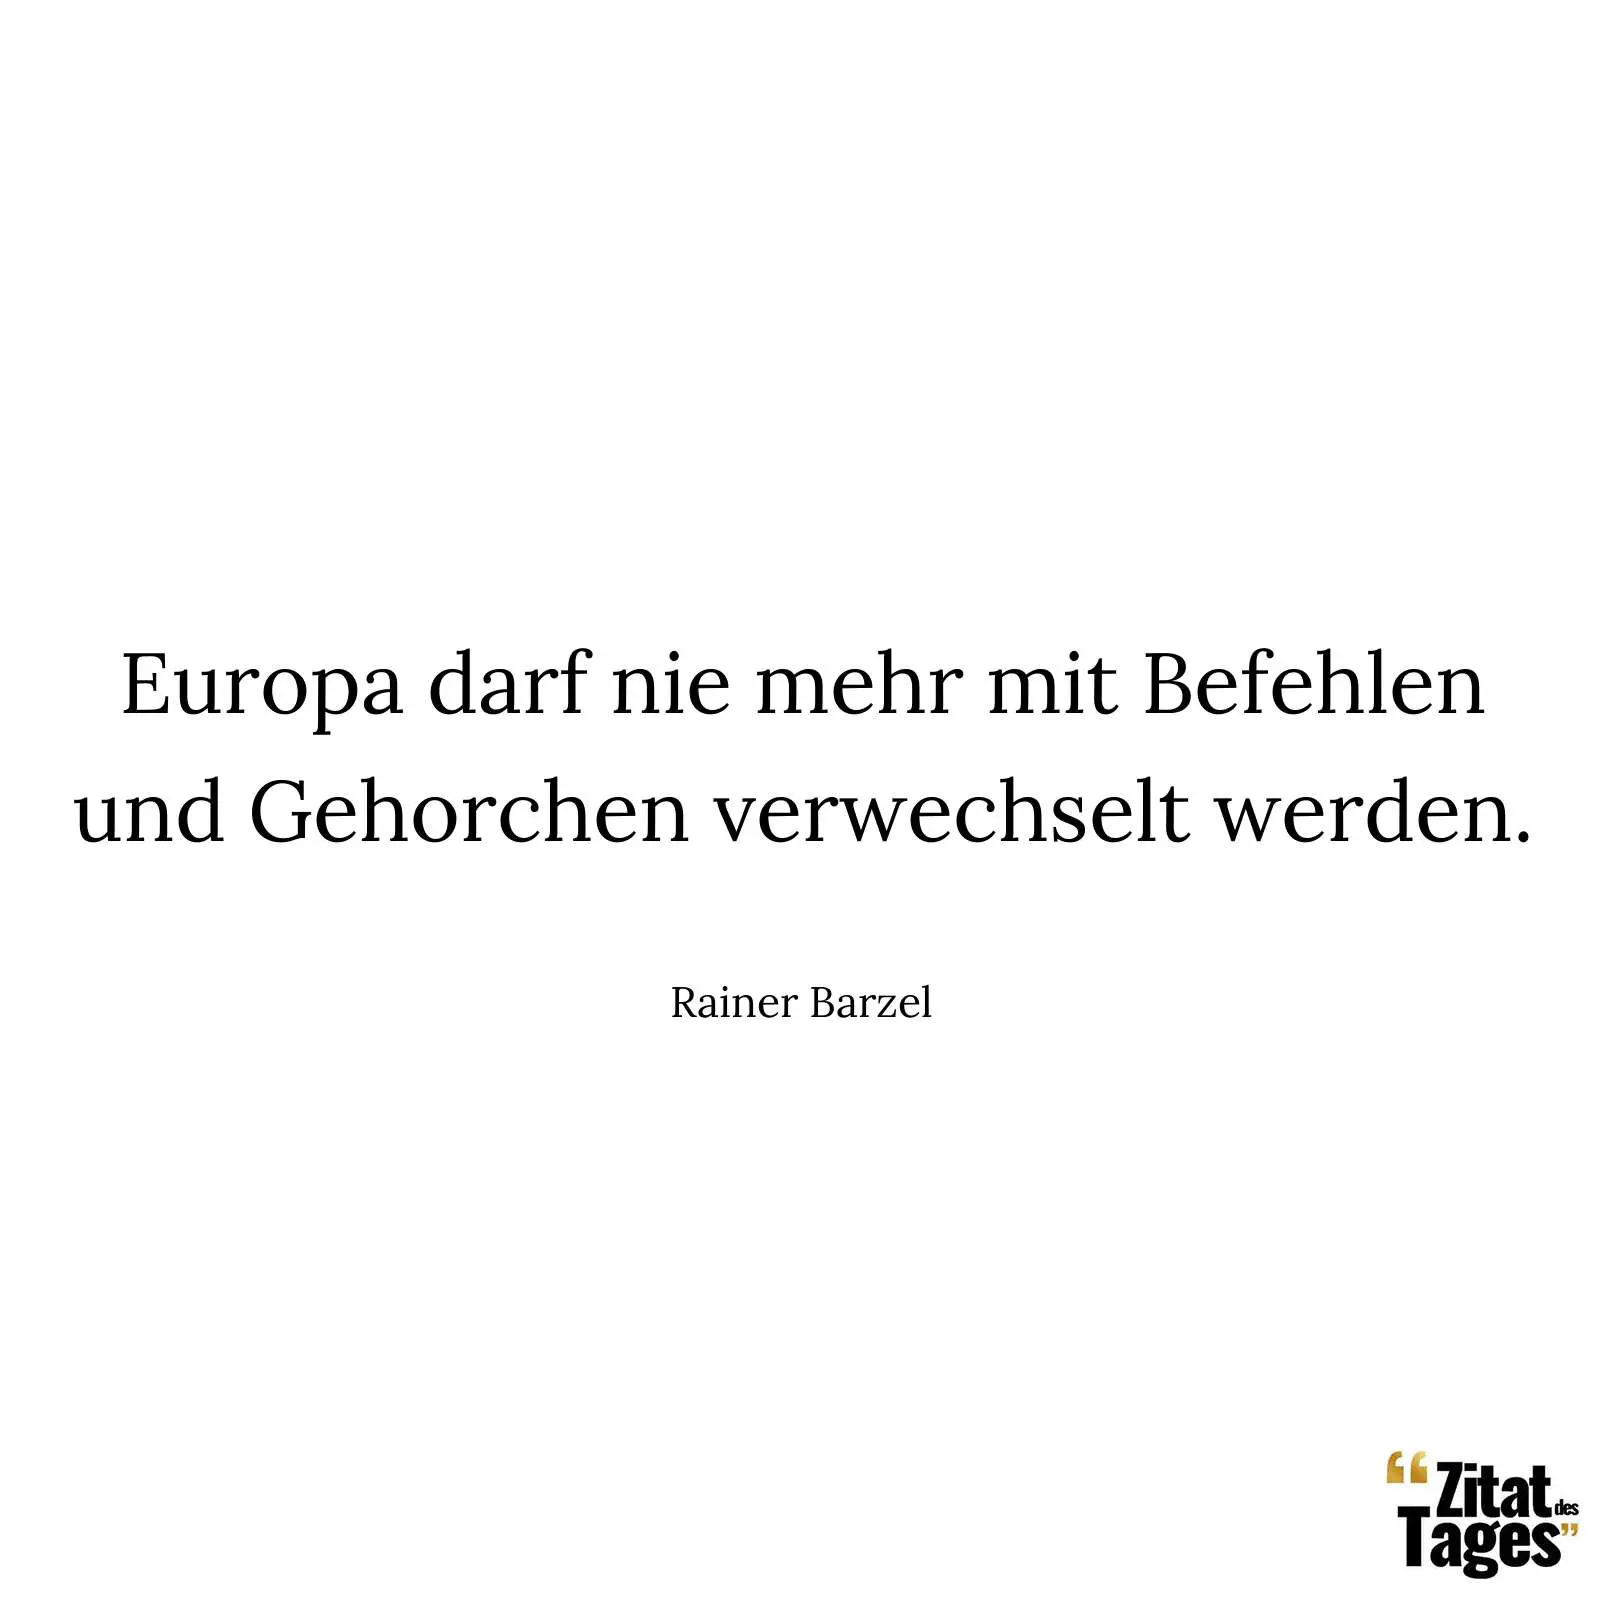 Europa darf nie mehr mit Befehlen und Gehorchen verwechselt werden. - Rainer Barzel